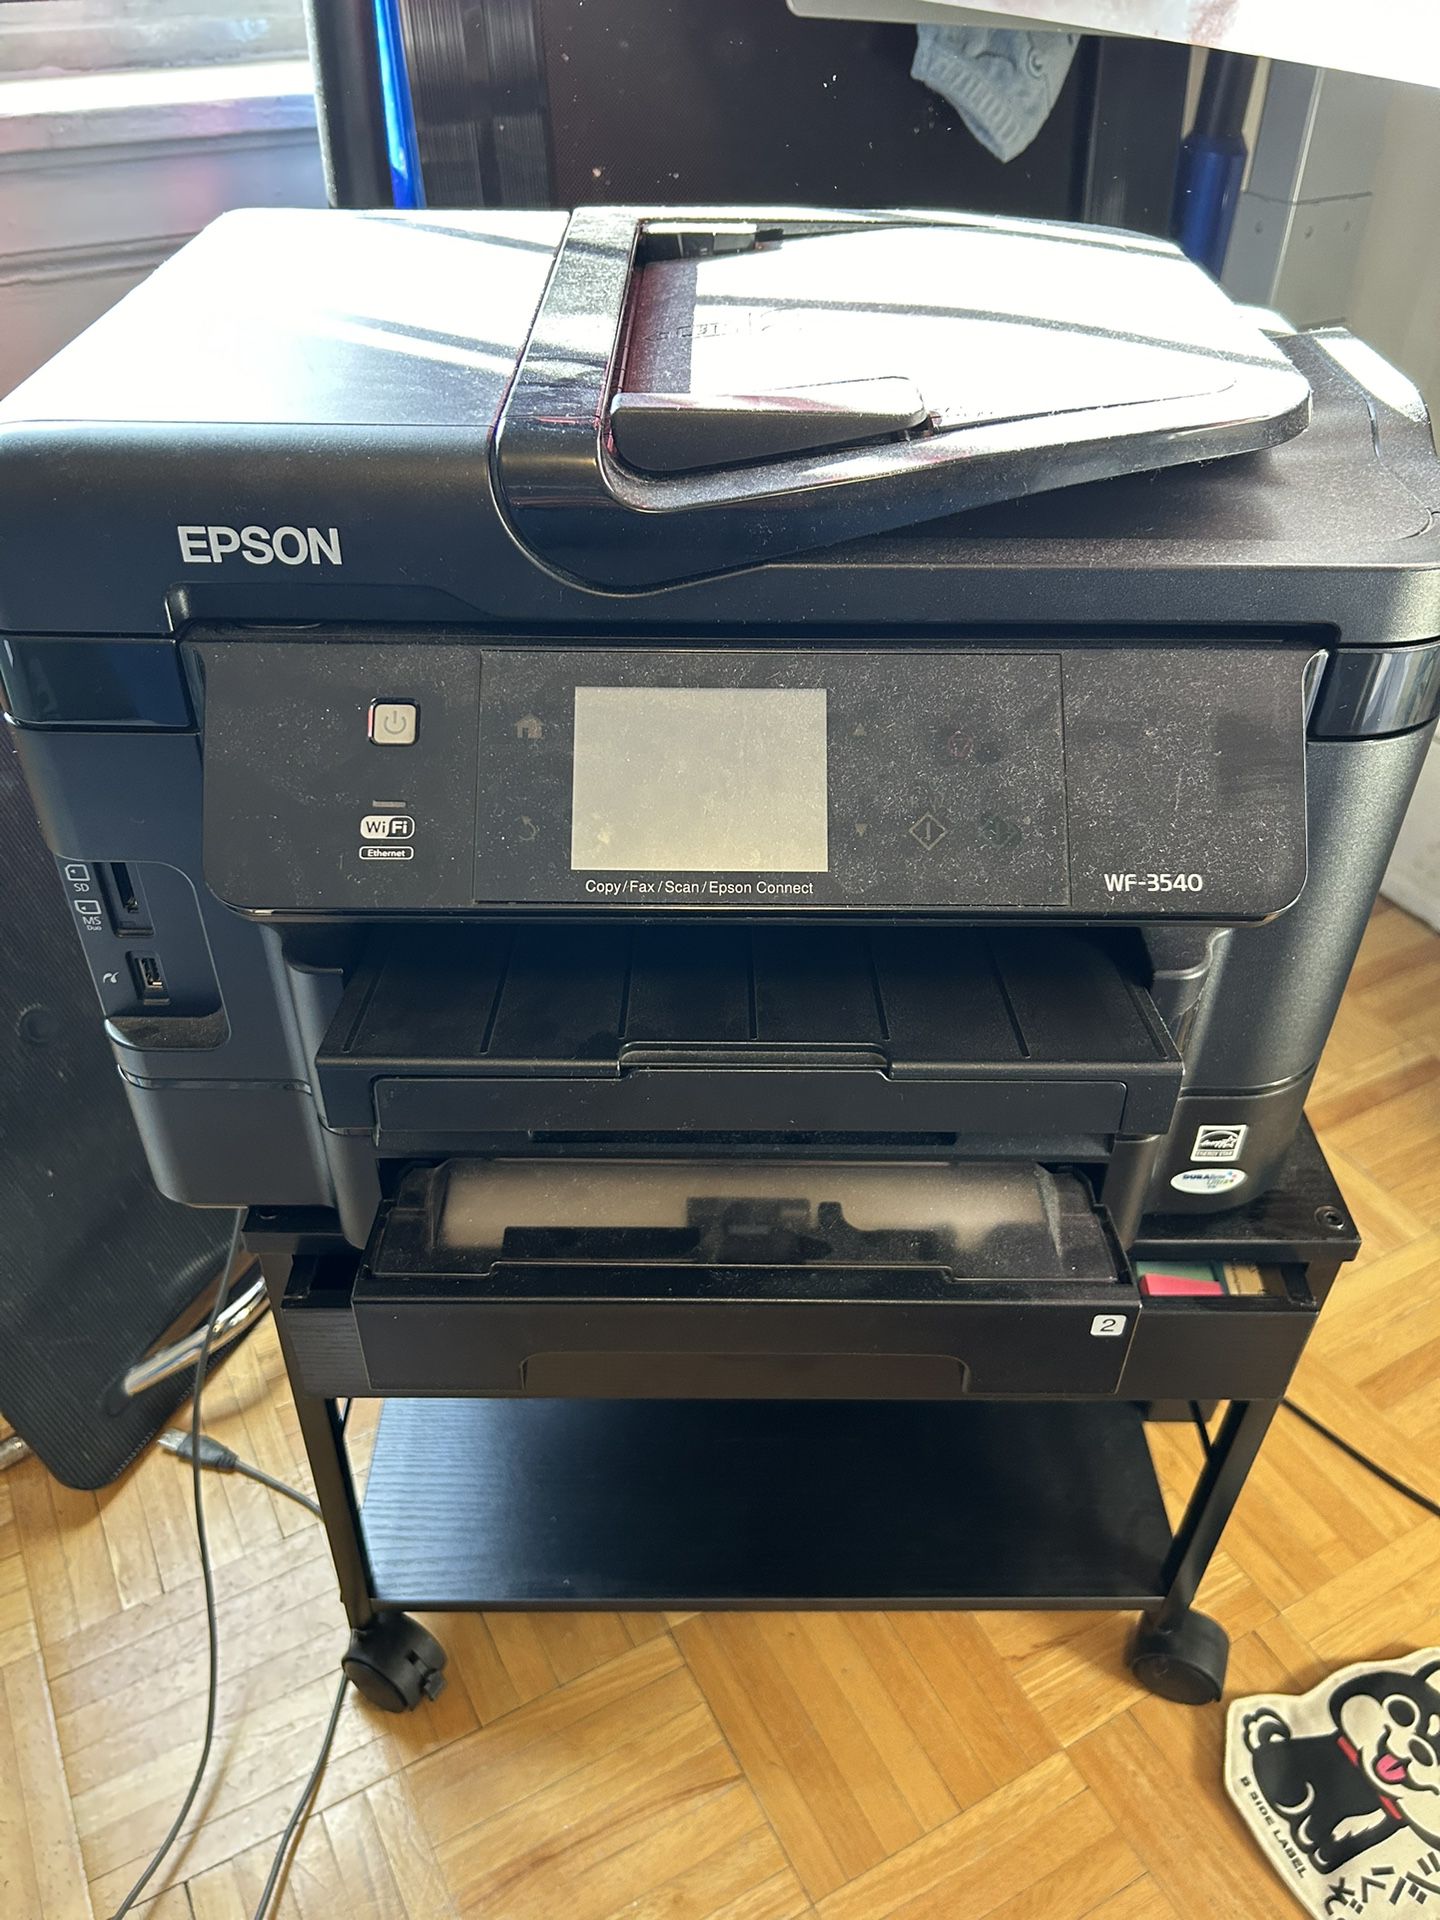 Printer And Printer Stand 